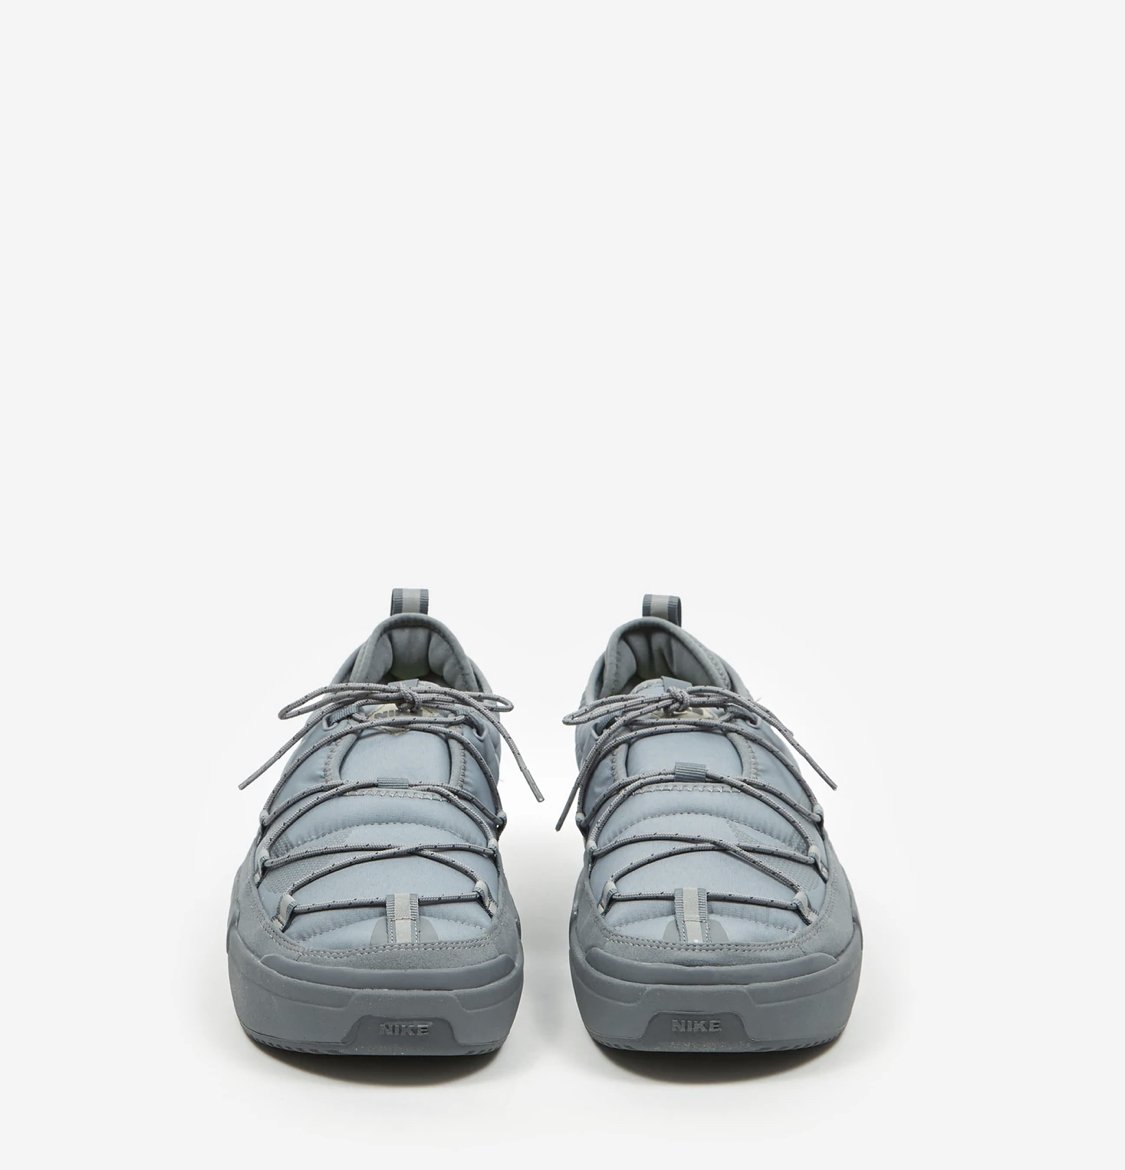 031 Men’s Sneakers - Drew Little - Offline.jpg